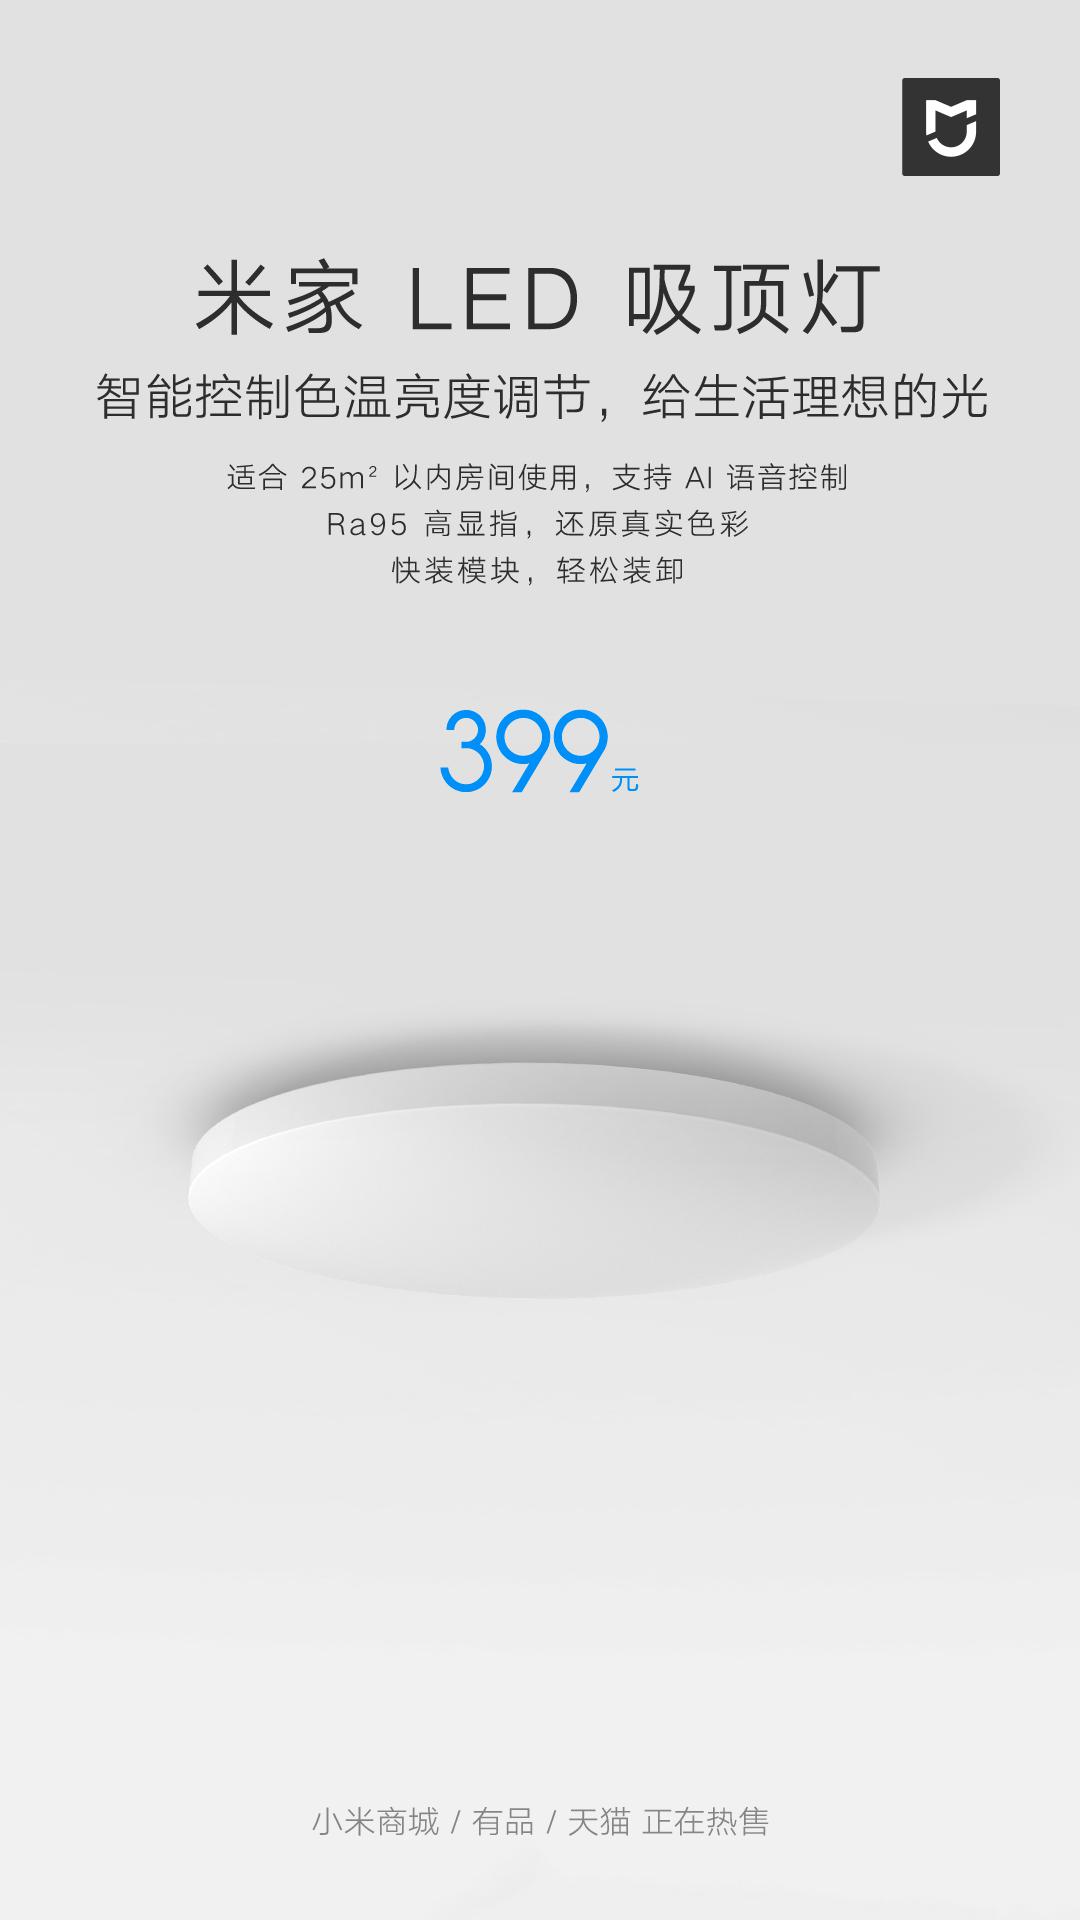 智能好光随心联动 小米米家LED吸顶灯发布售价399元